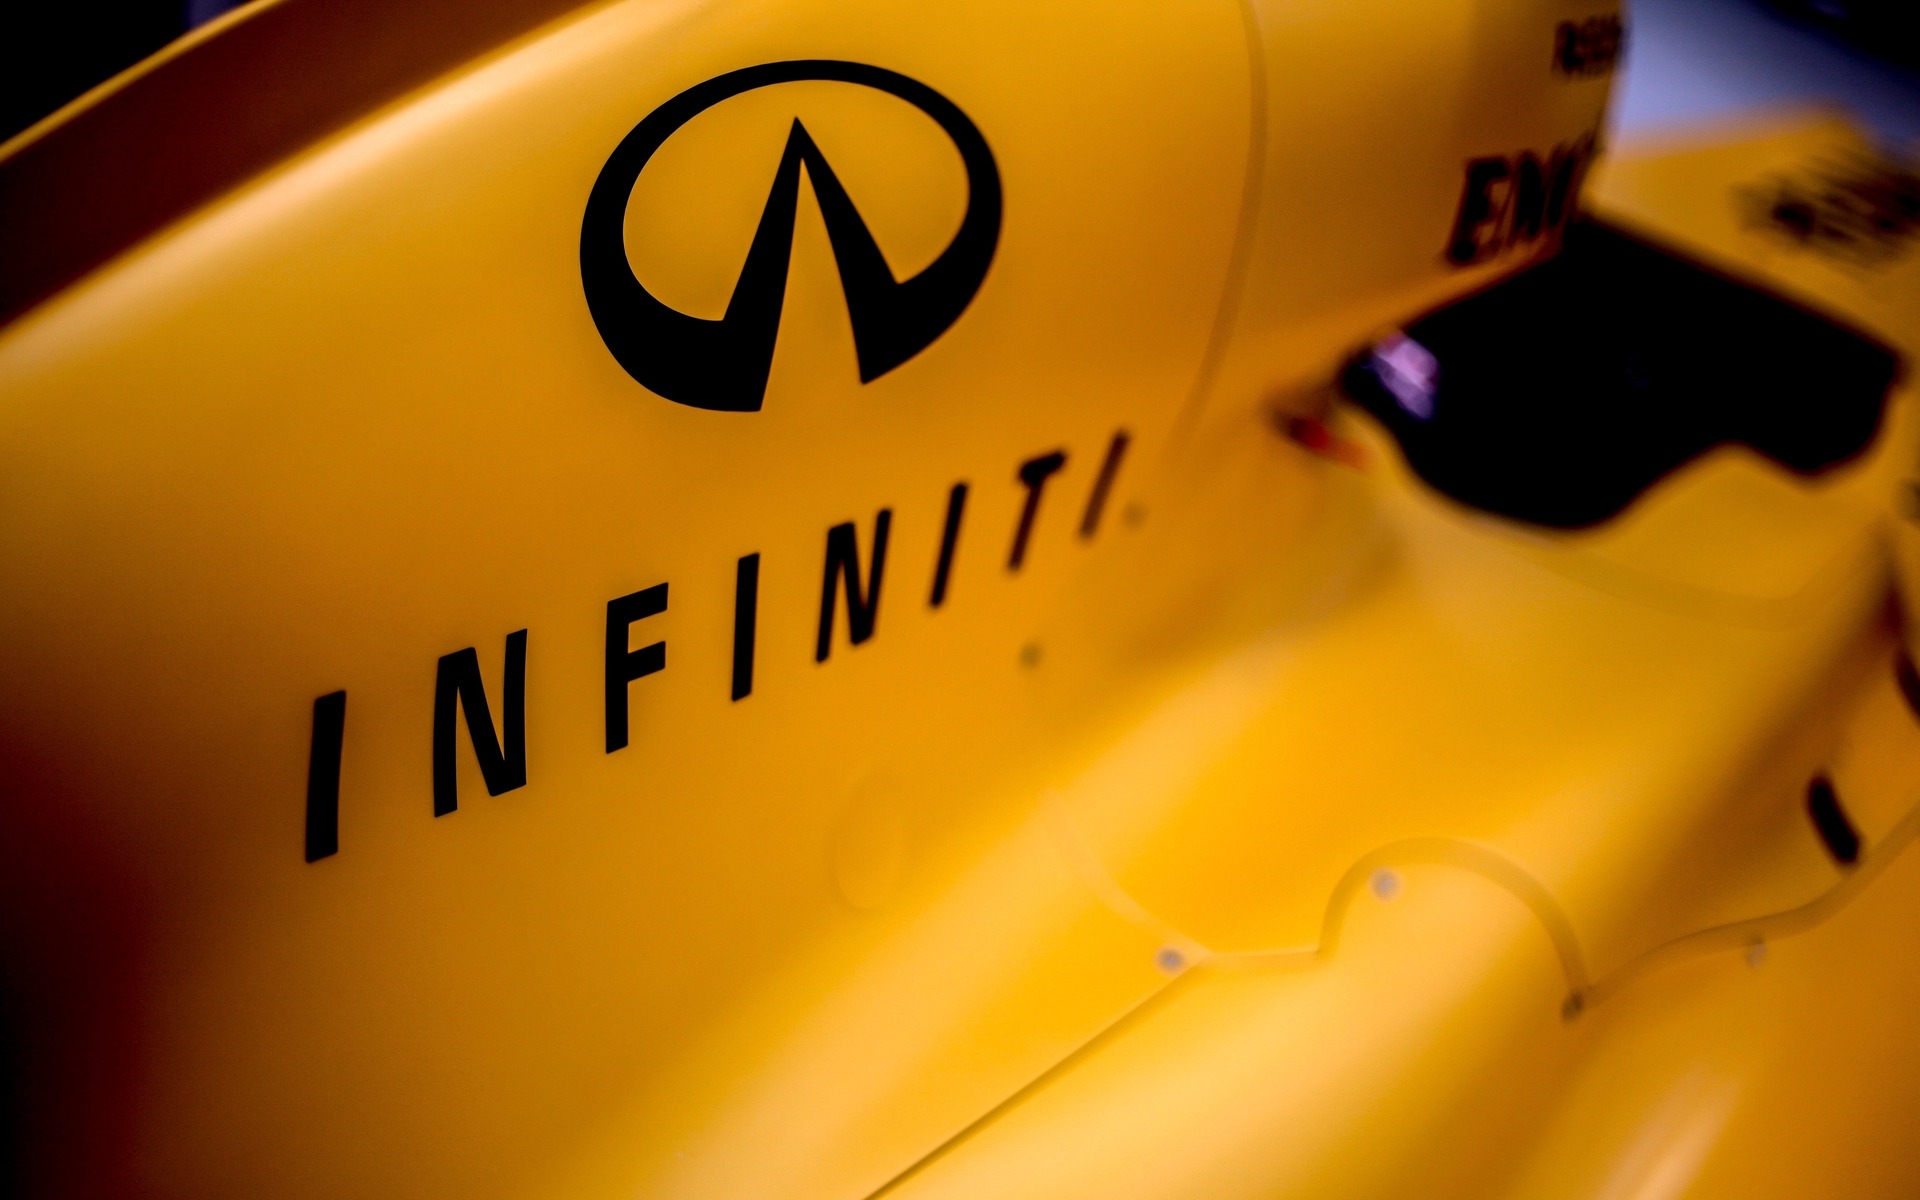 Infiniti sur le capot moteur de la Renault de F1